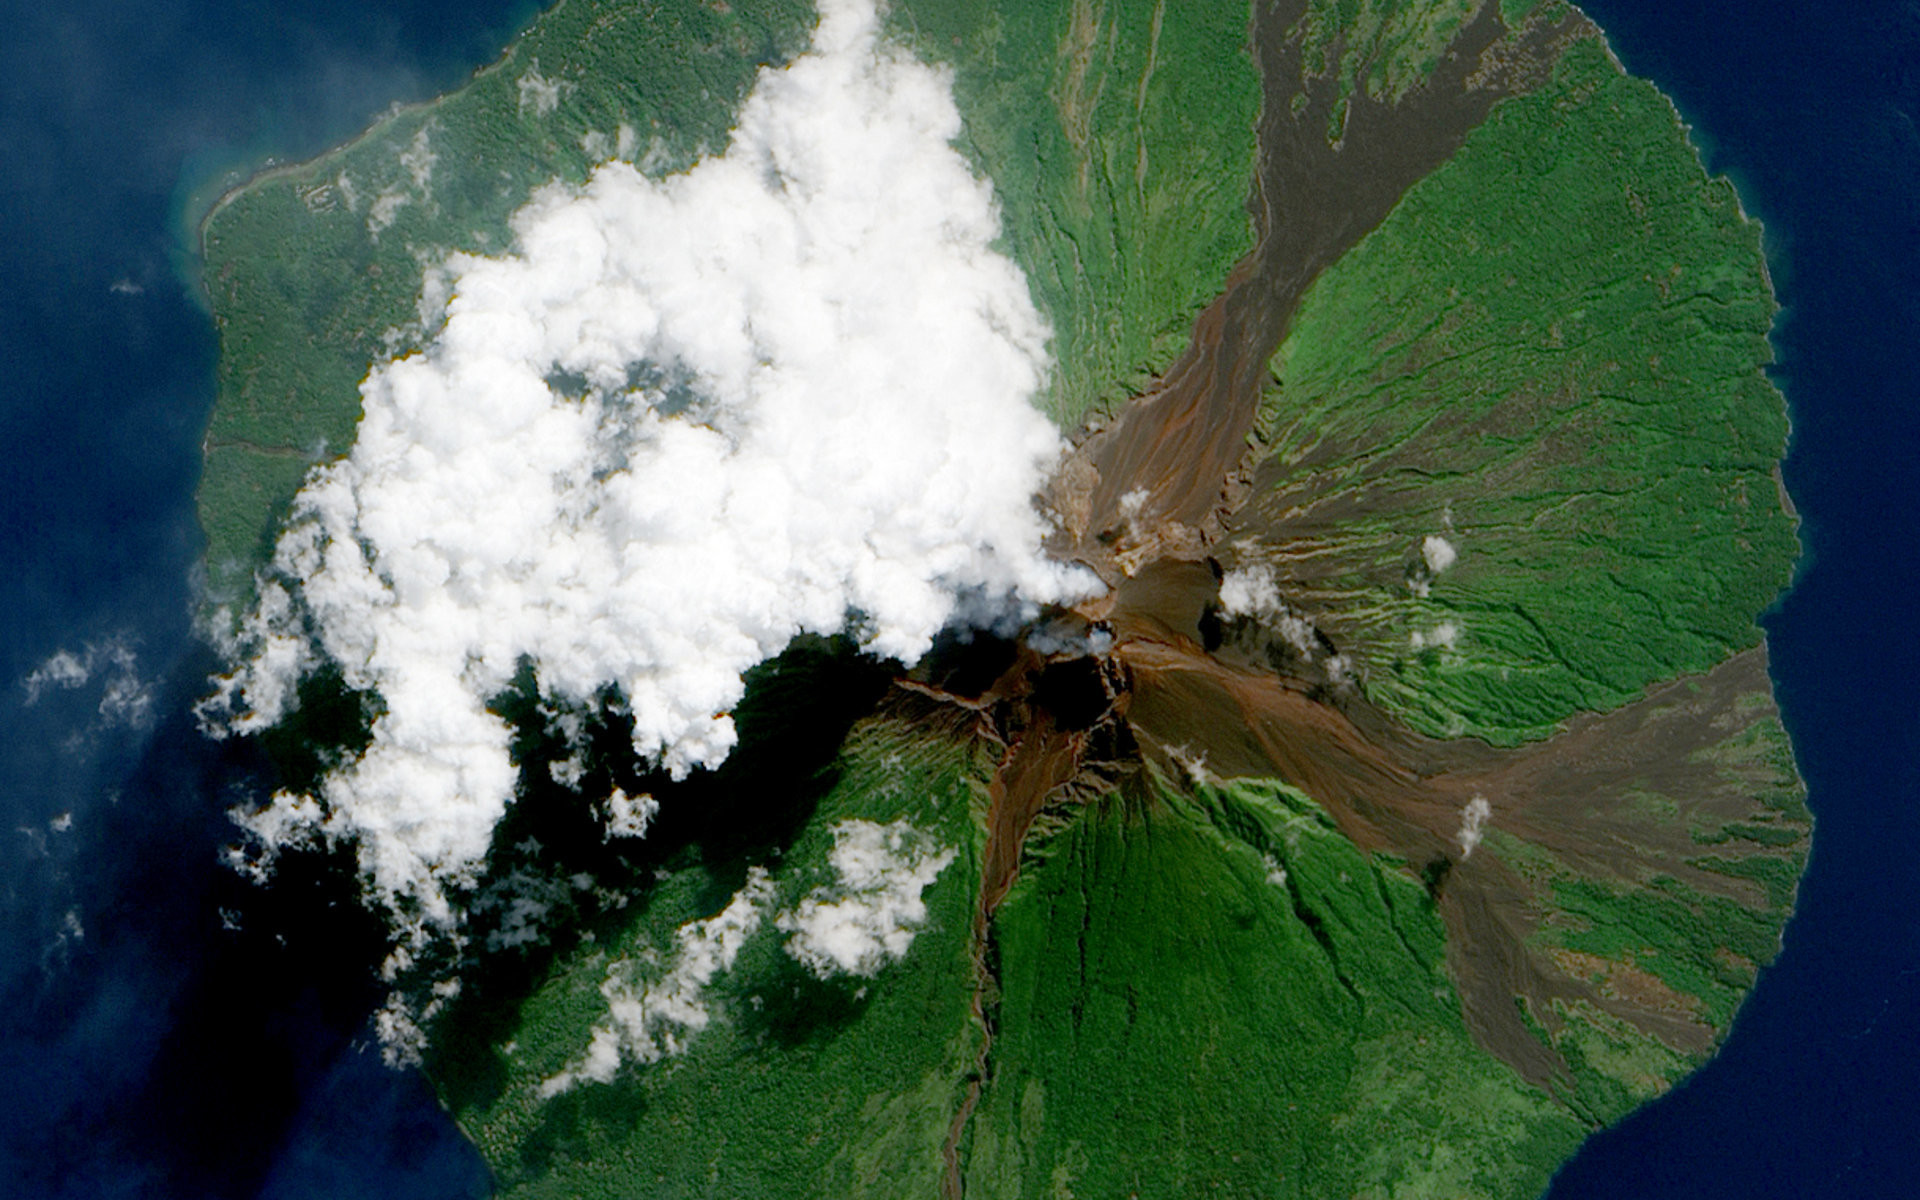 Вулкан Манам у побережья Папуа-Новой Гвинеи. Он образует остров диаметром в 10 км. Из кратера вулкана вырывается белый шлейф.